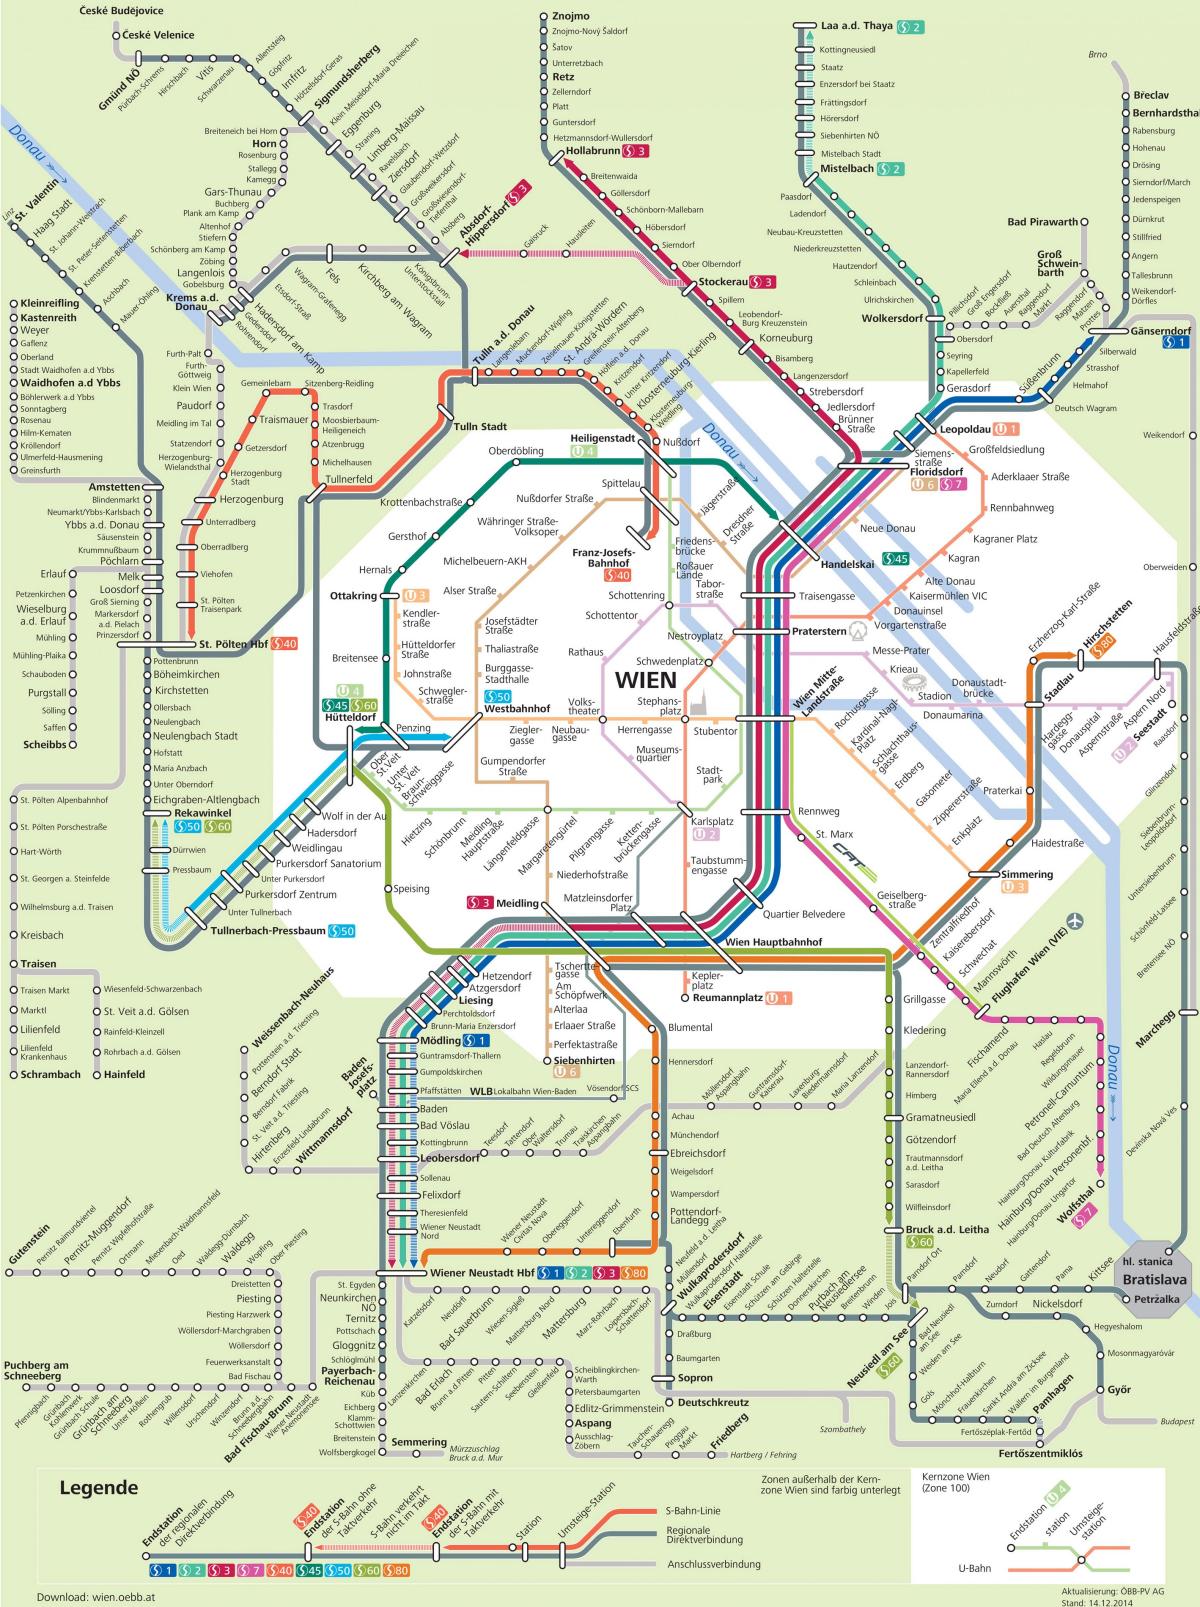 Бечки градски превоз мапи